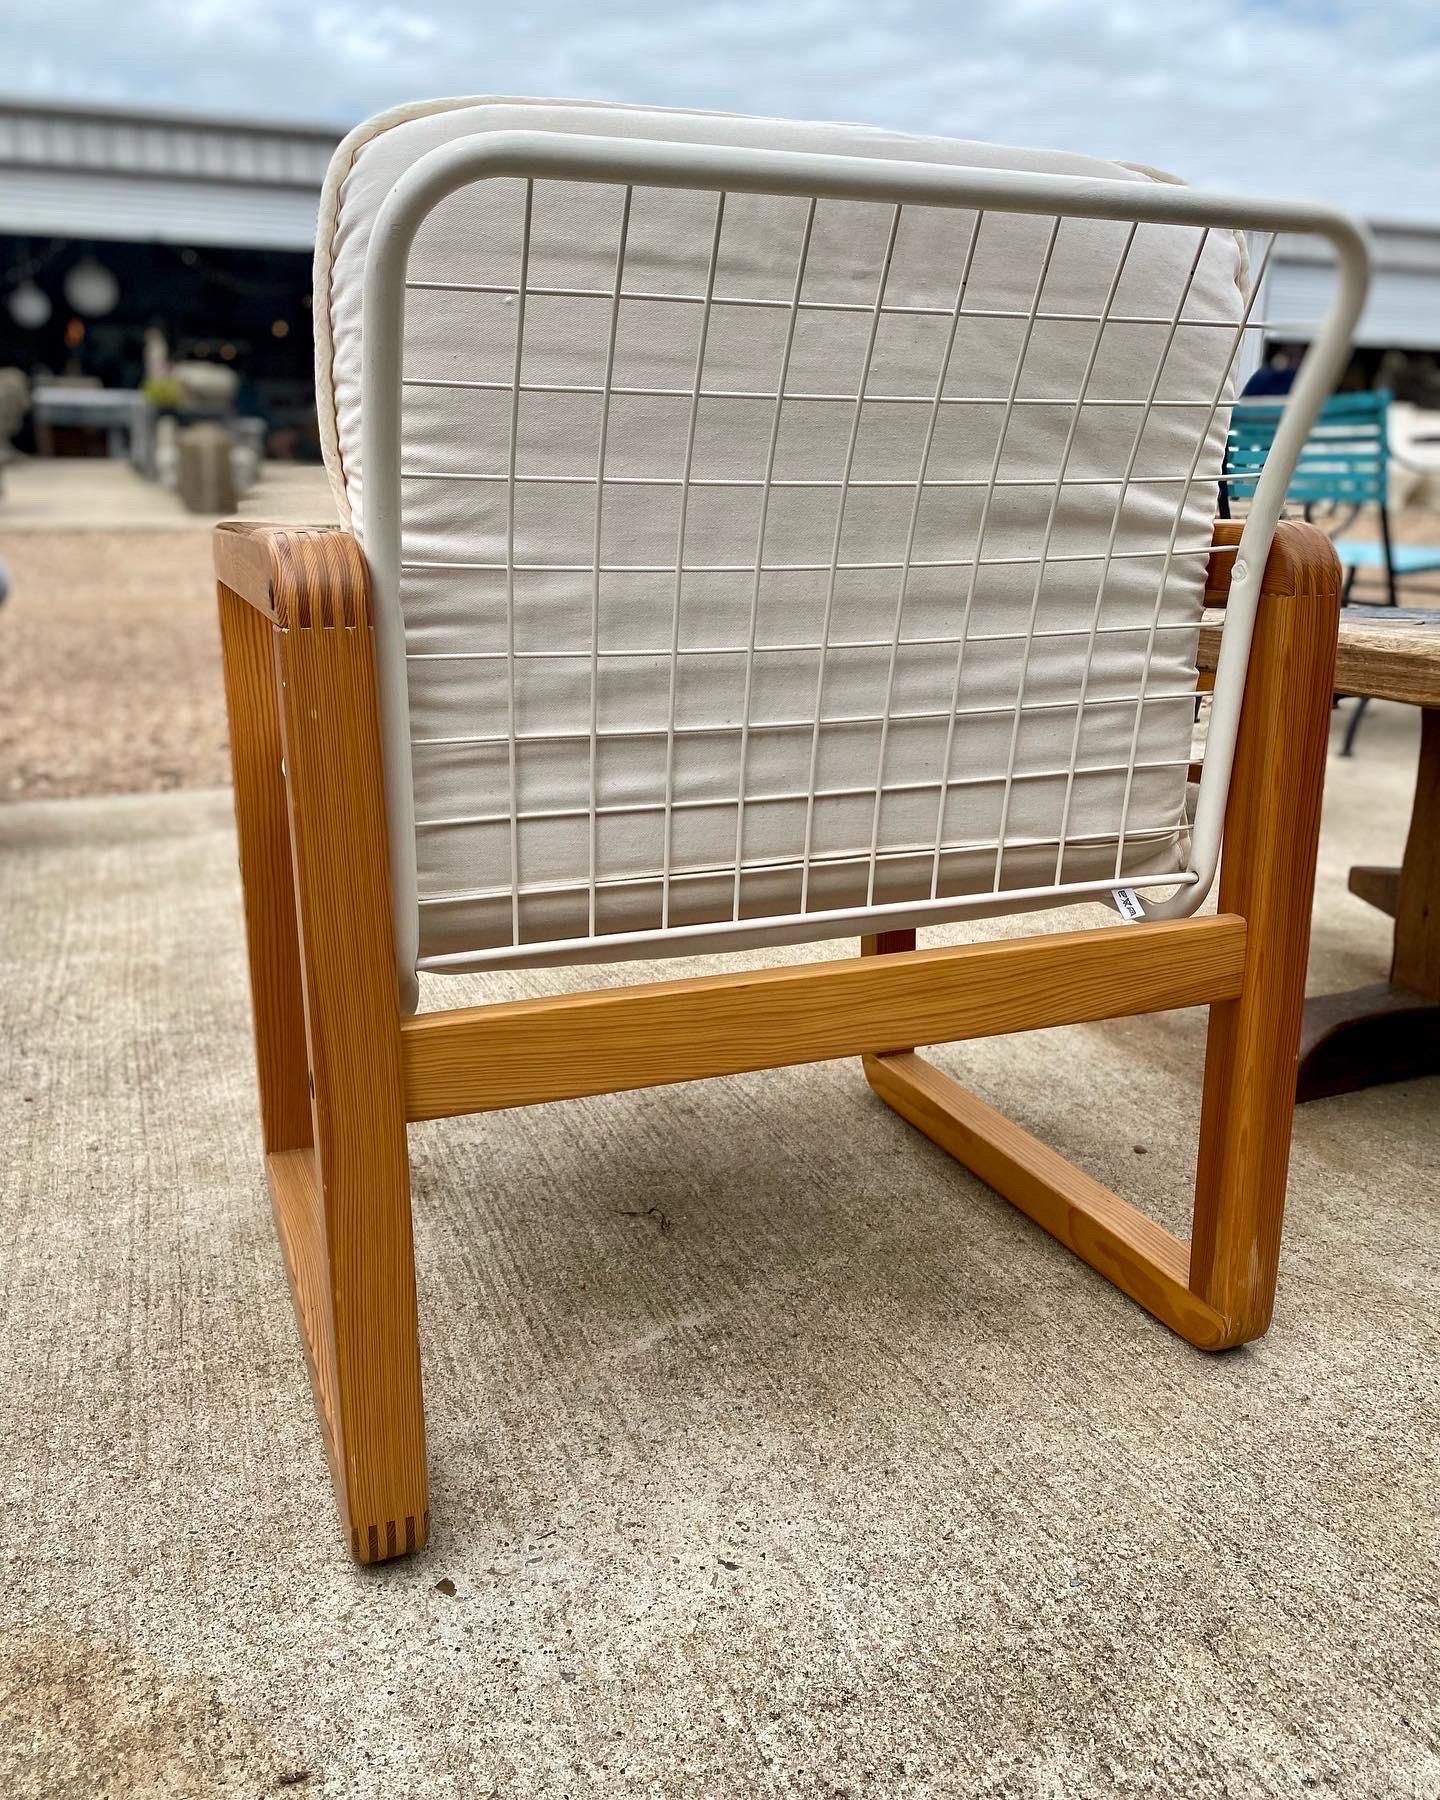 Fauteuil Vintage Salen par Knut & Marianne Hagberg pour Ikea, années 1980.  Fabriquée en pin et avec une structure en fil de fer, cette chaise est en bon état. 

Dimensions : 25 